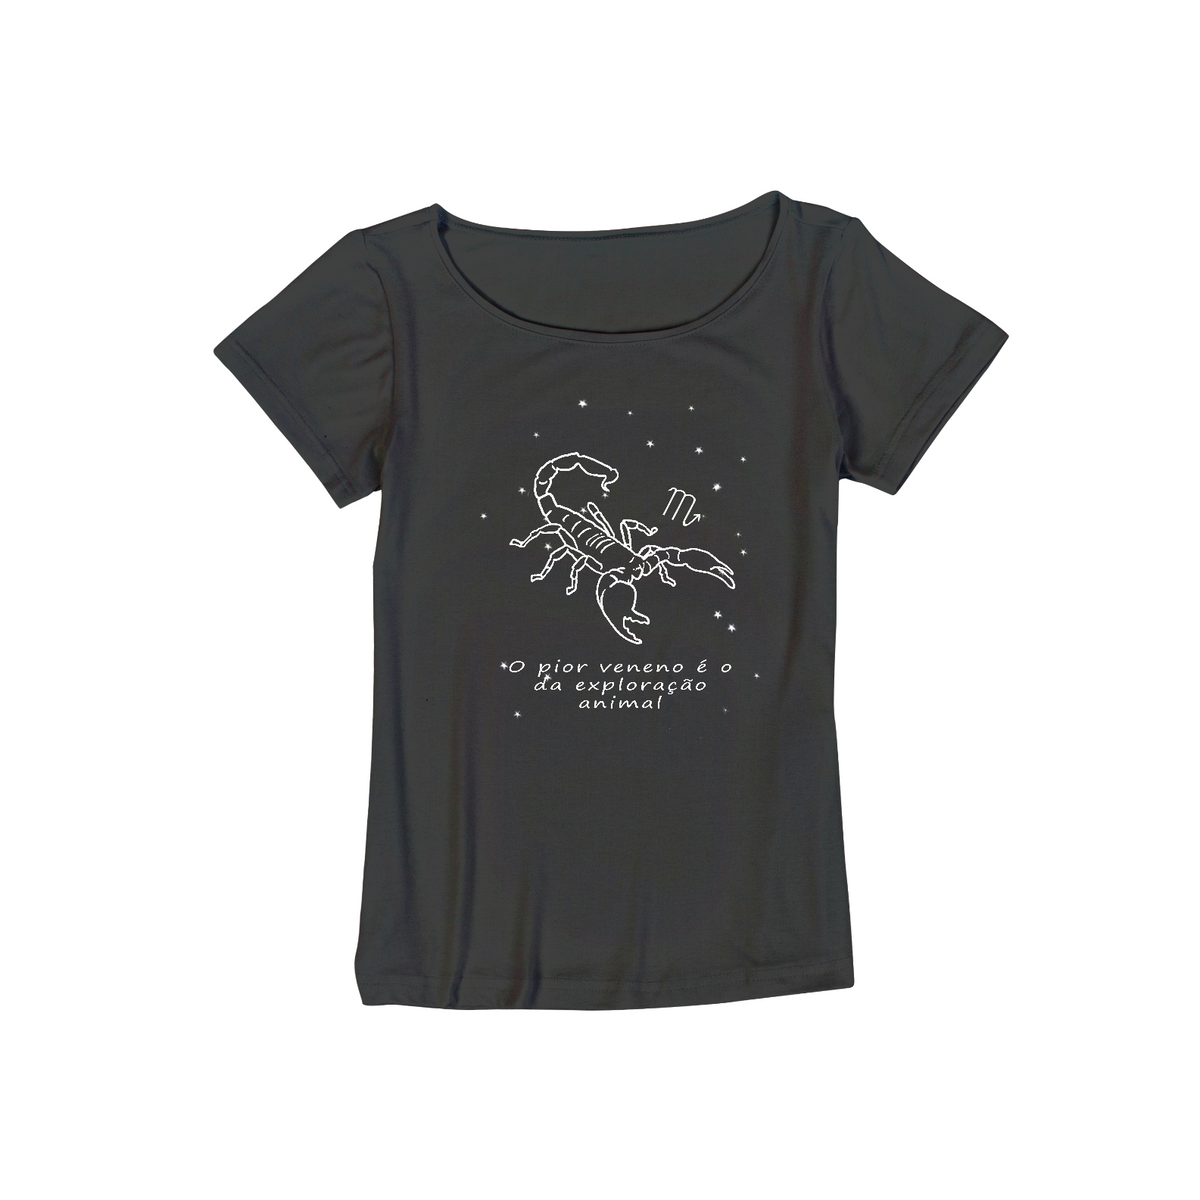 Nome do produto: Camiseta Viscolycra | Escorpião | O pior veneno é o da exploração animal | P&B